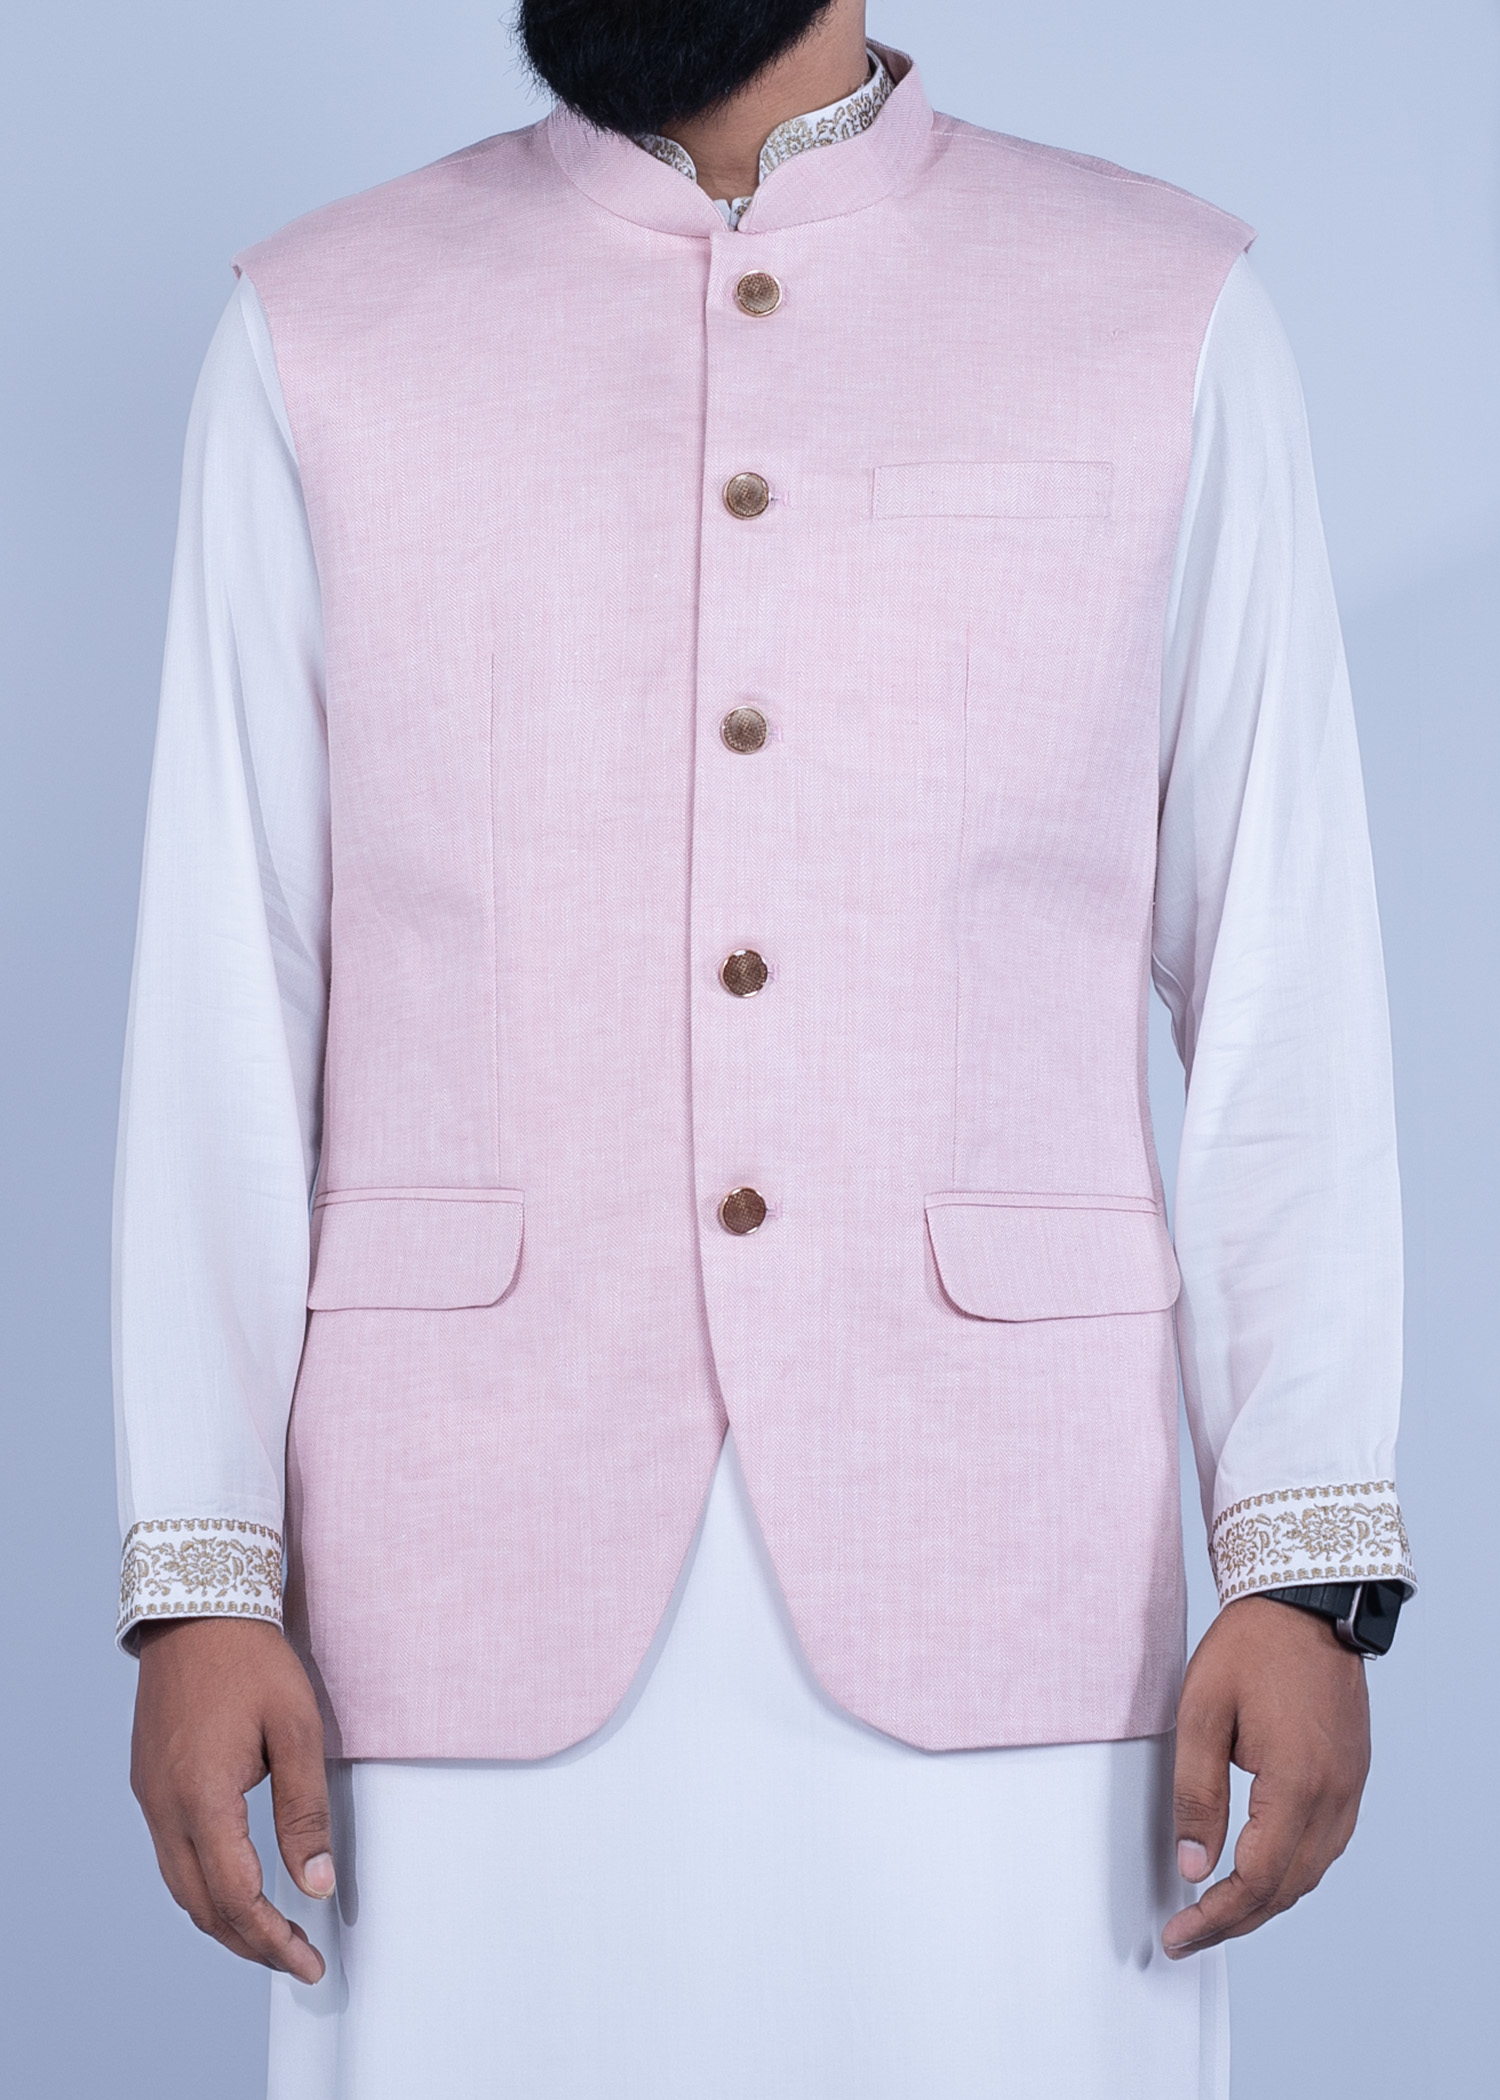 kashmir vest light pink color half front view